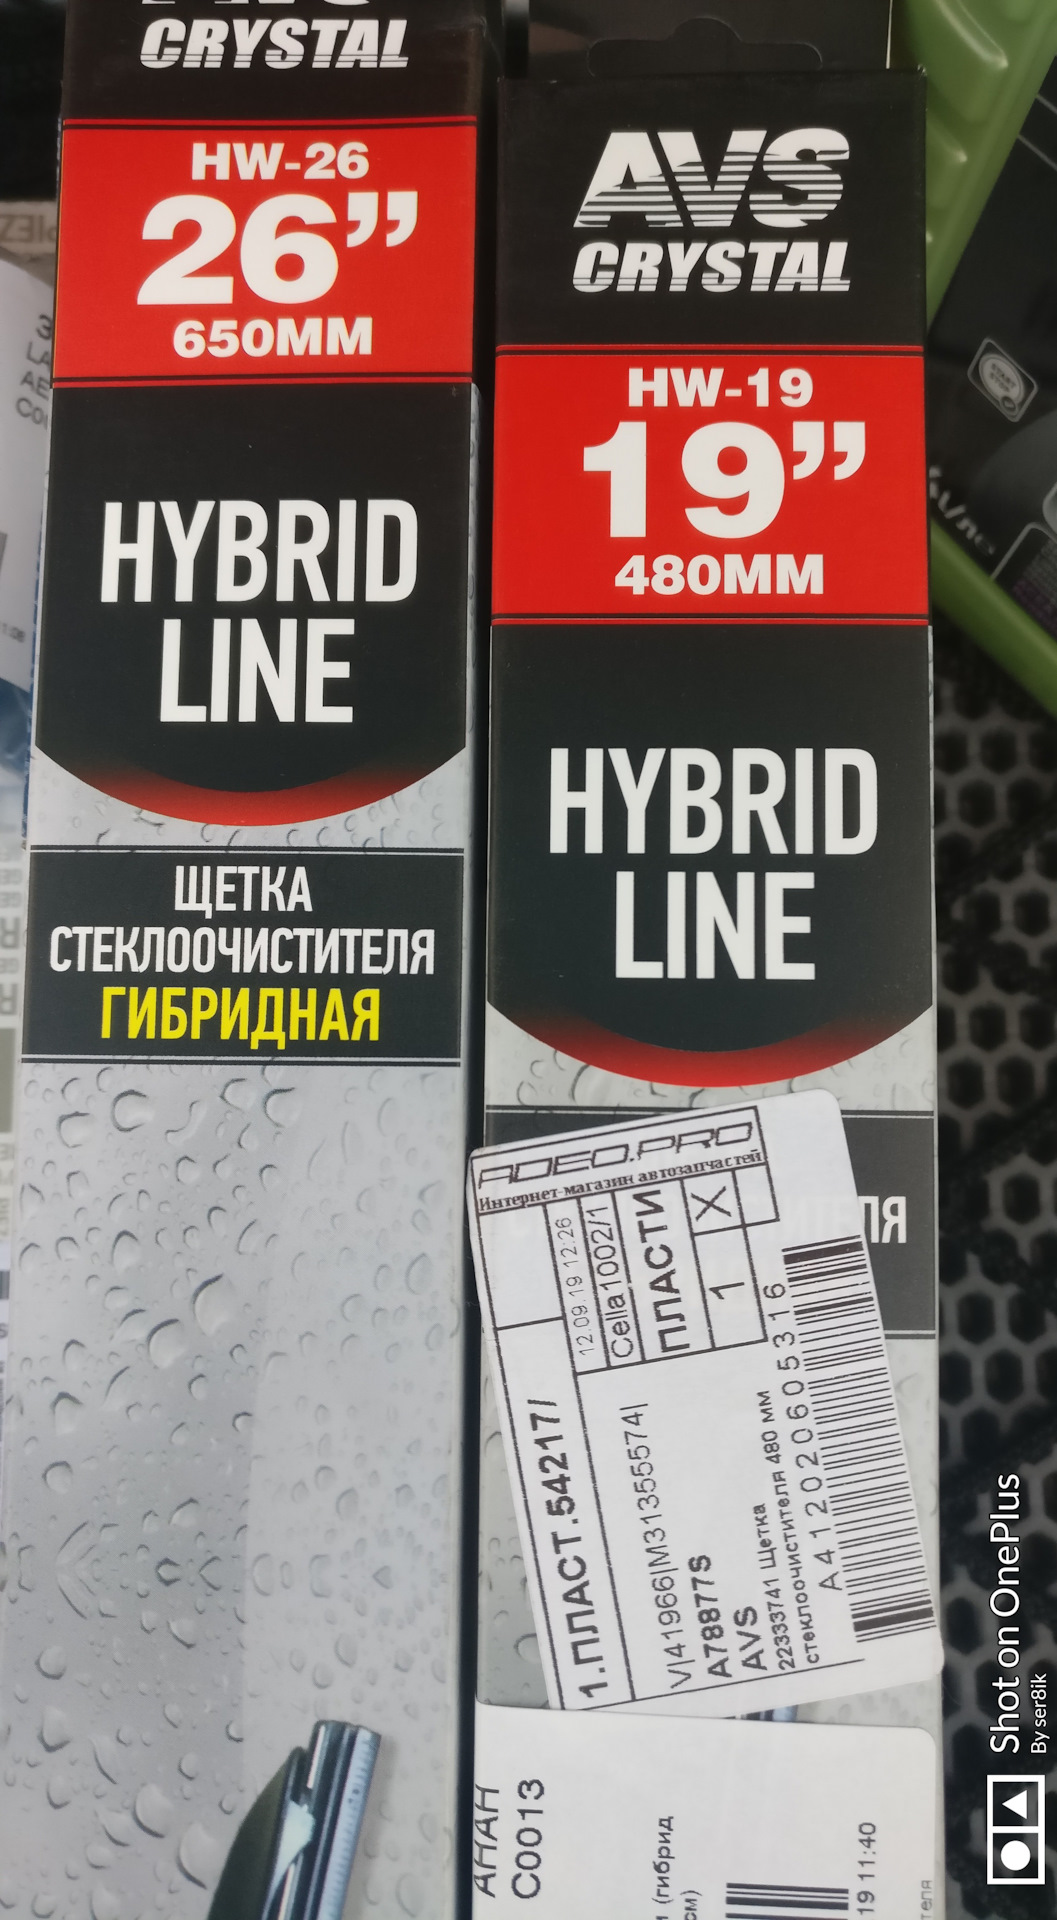 Hybrid line. AVS Hybrid line.